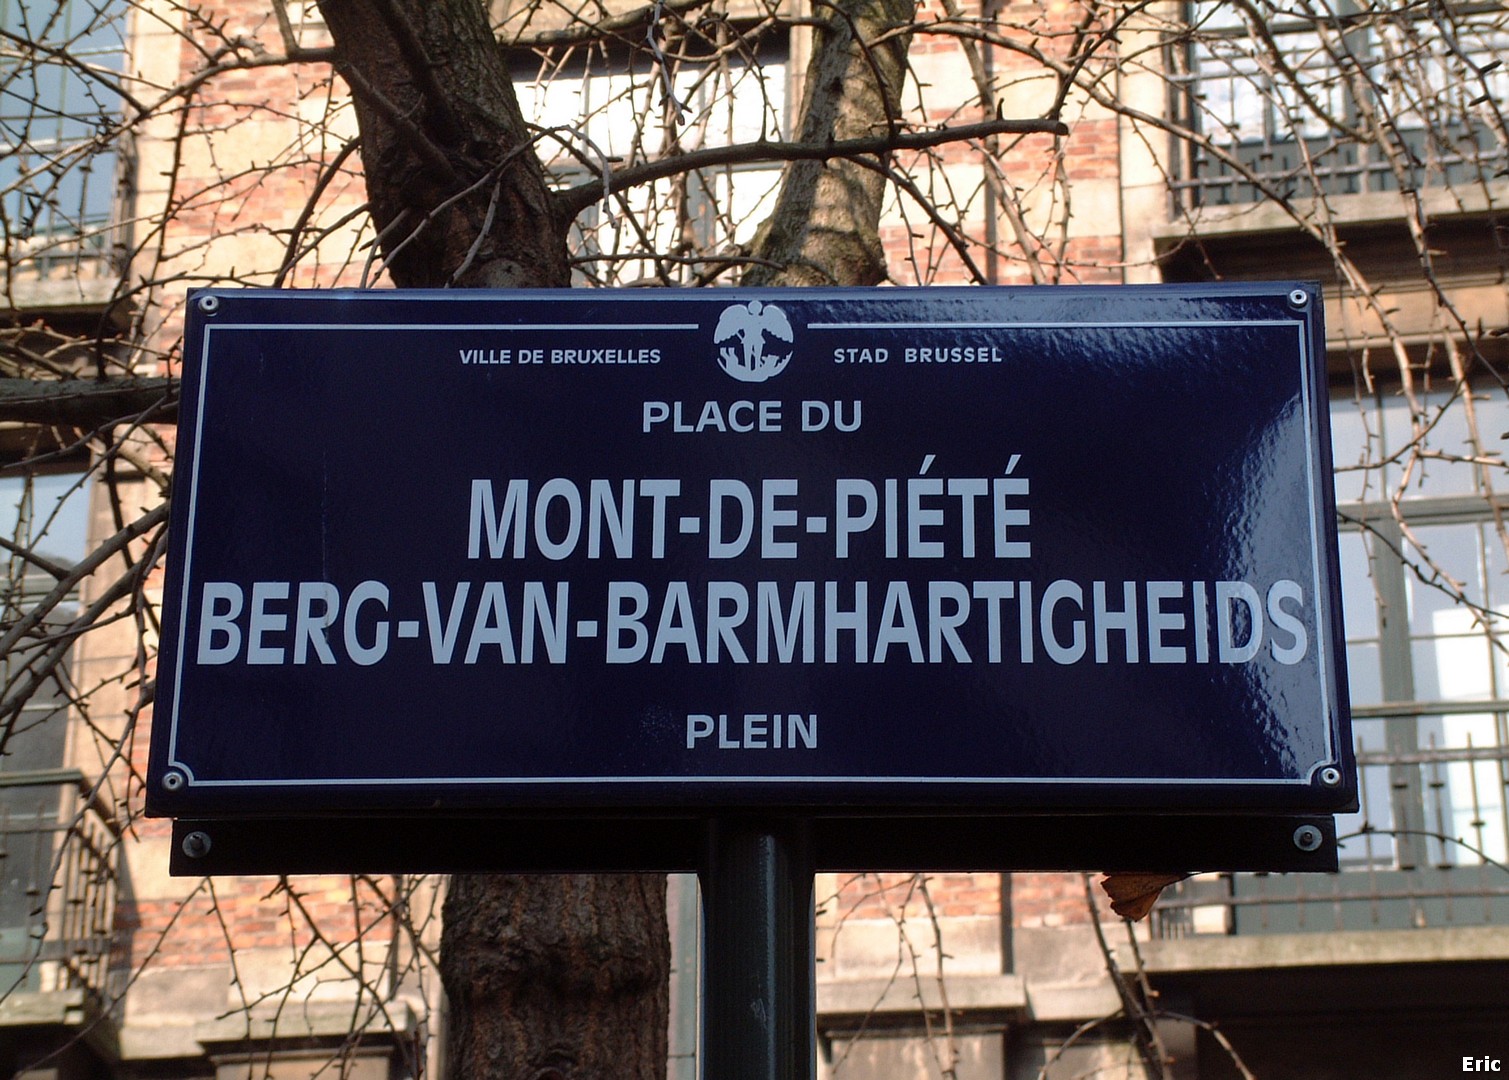 Place du Mont-de-Pit